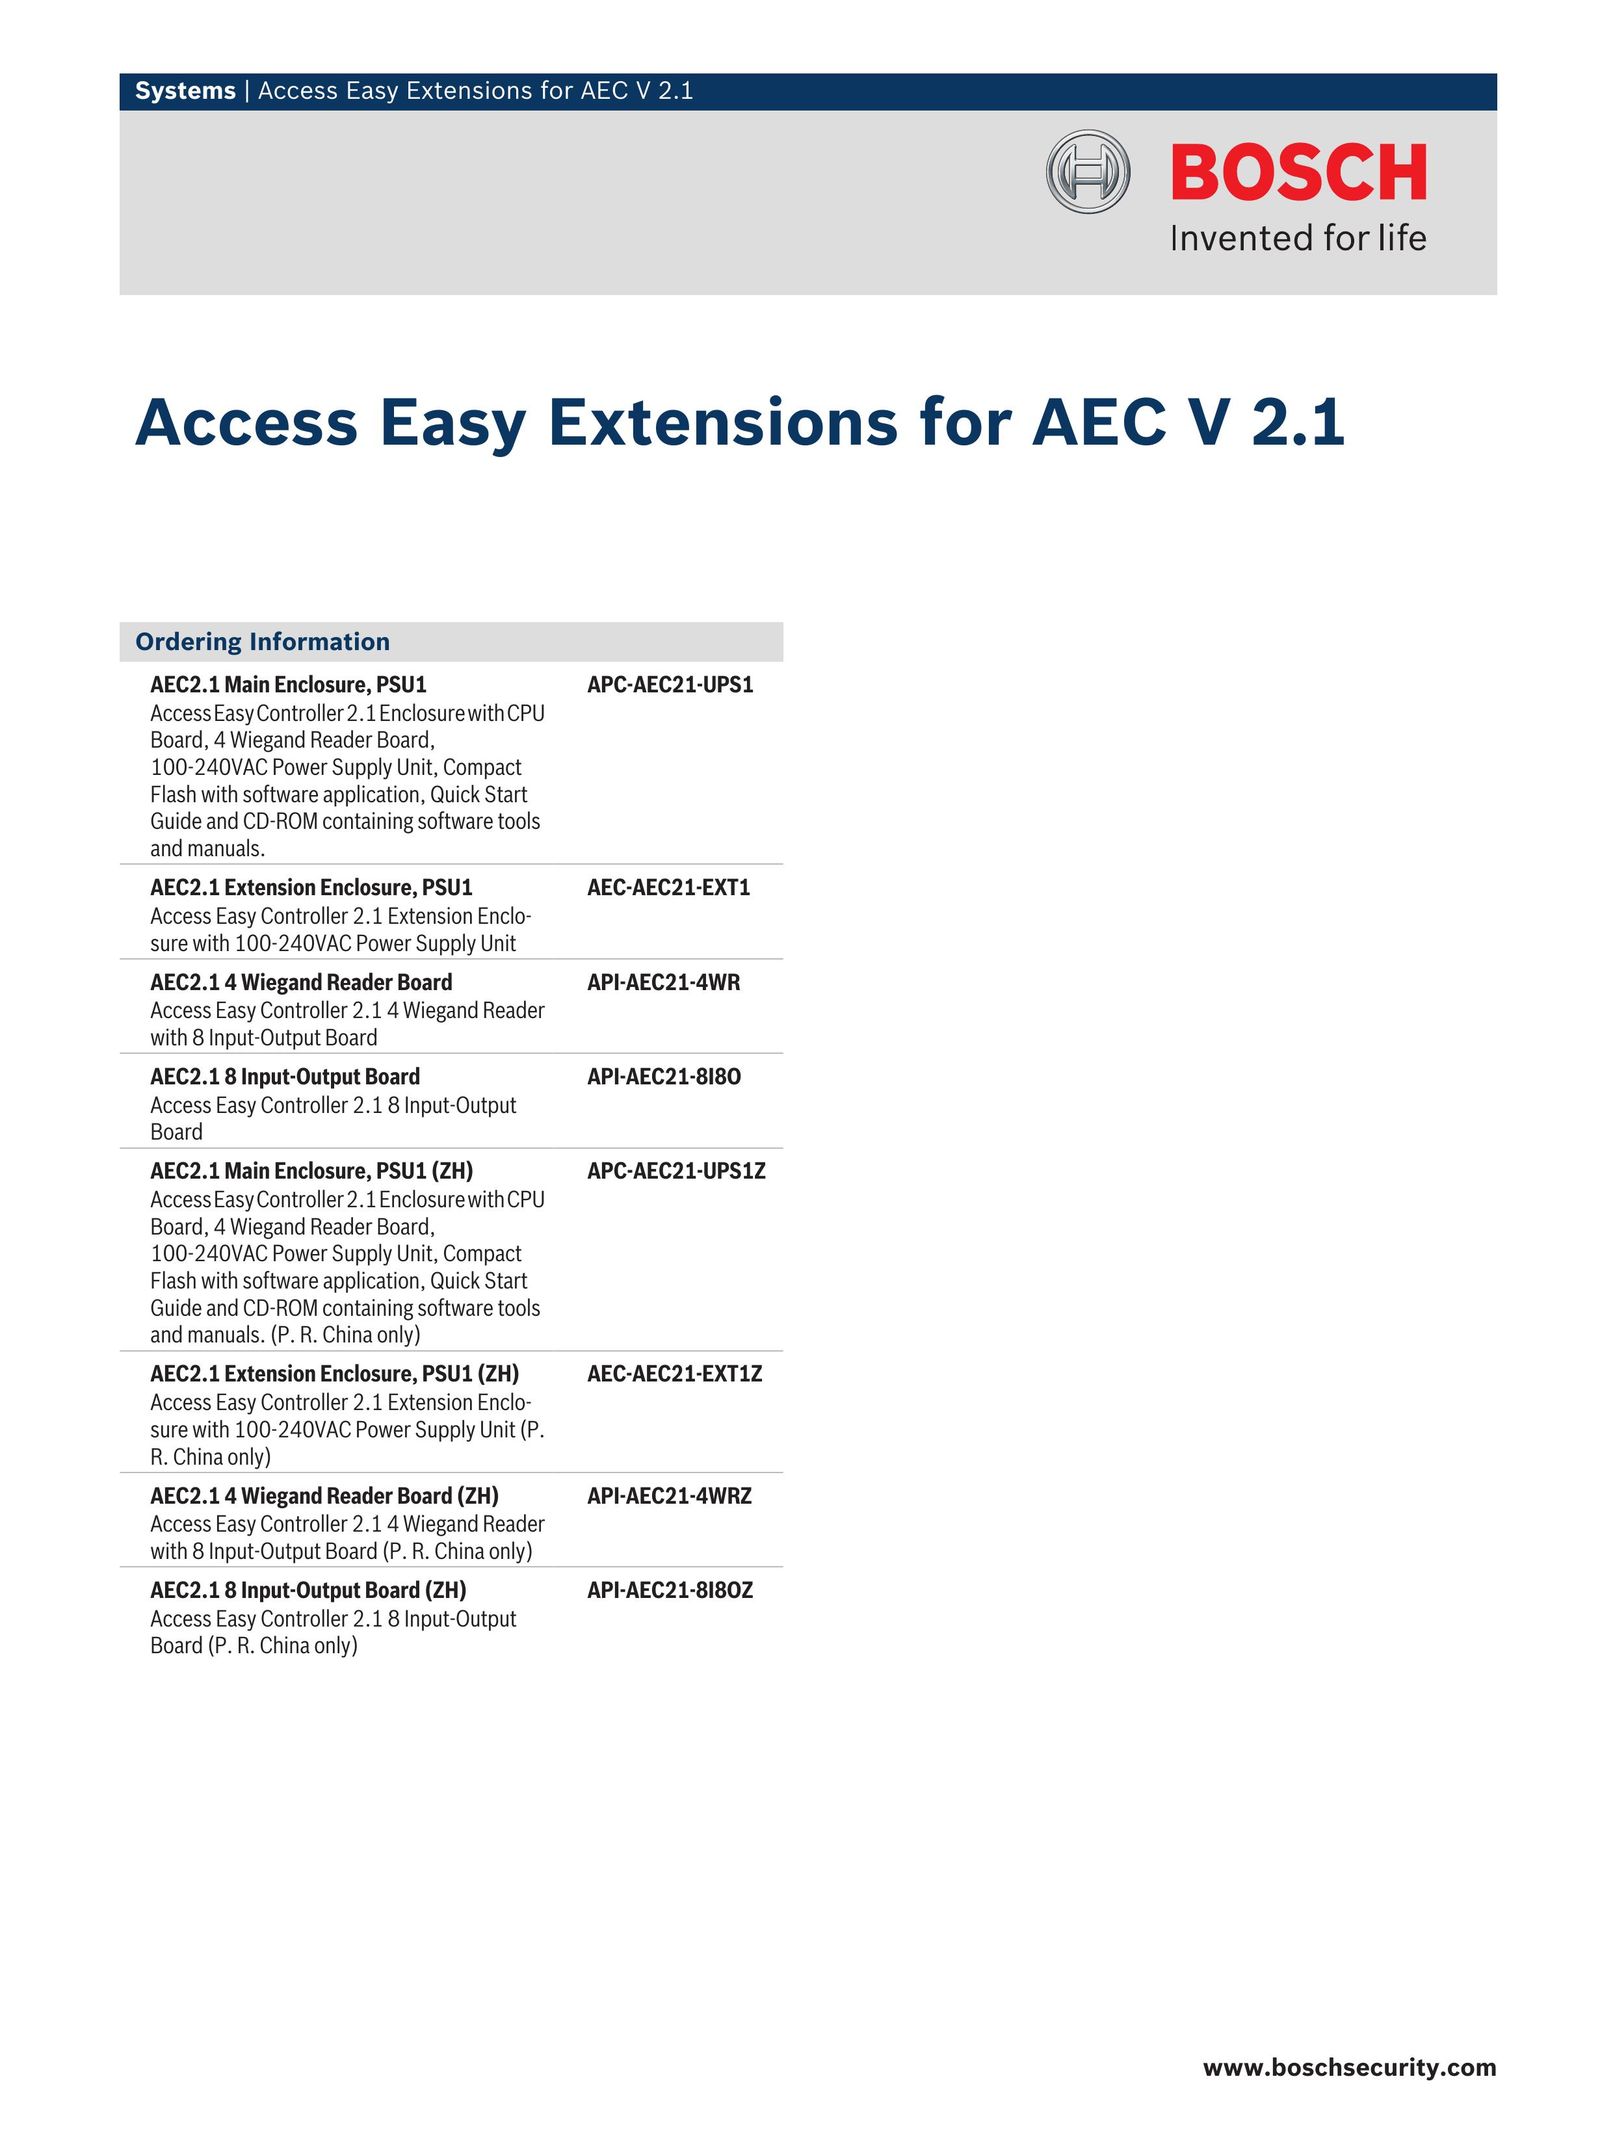 Bosch Appliances API-AEC21-8I8OZ Home Security System User Manual